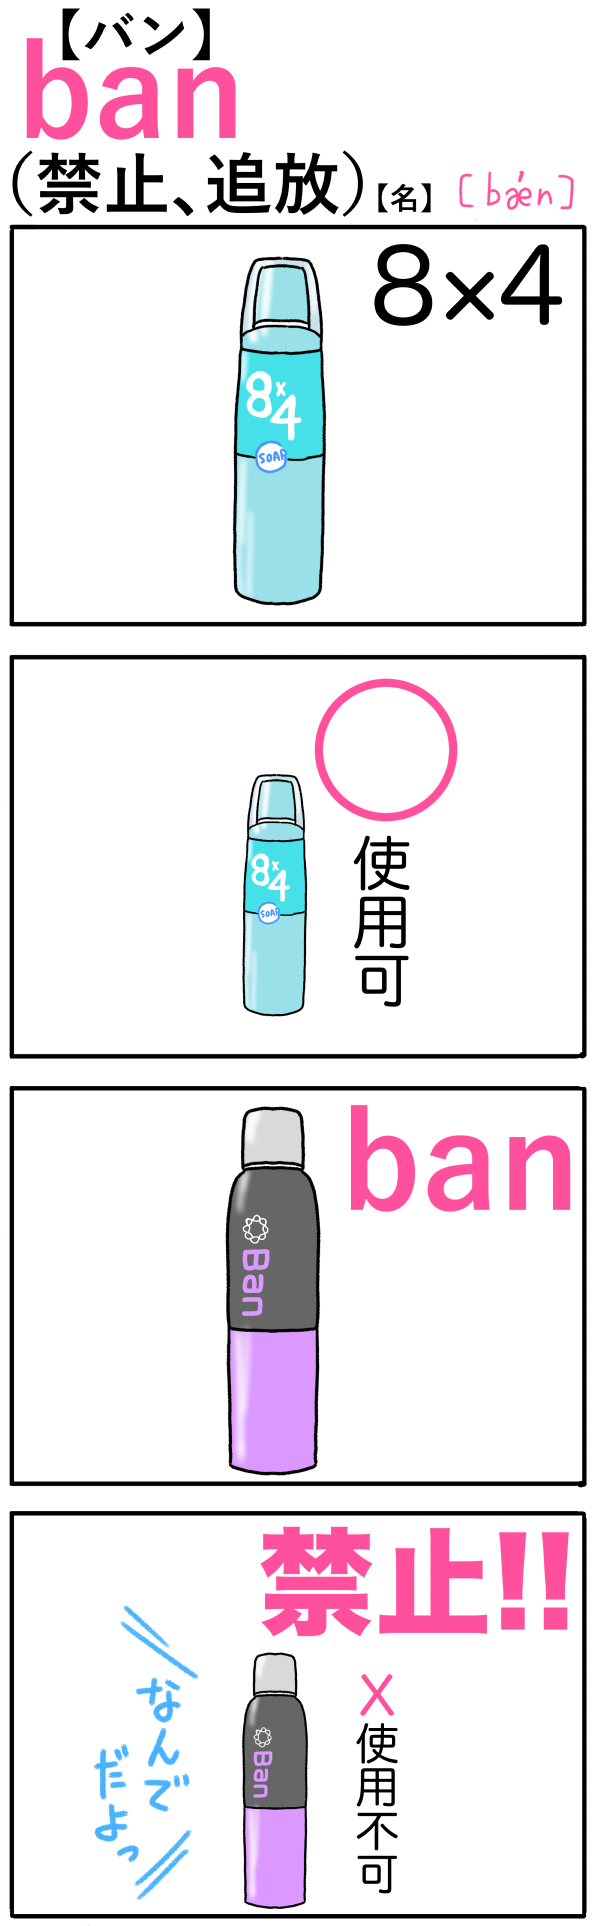 ban（禁止）の語呂合わせ英単語